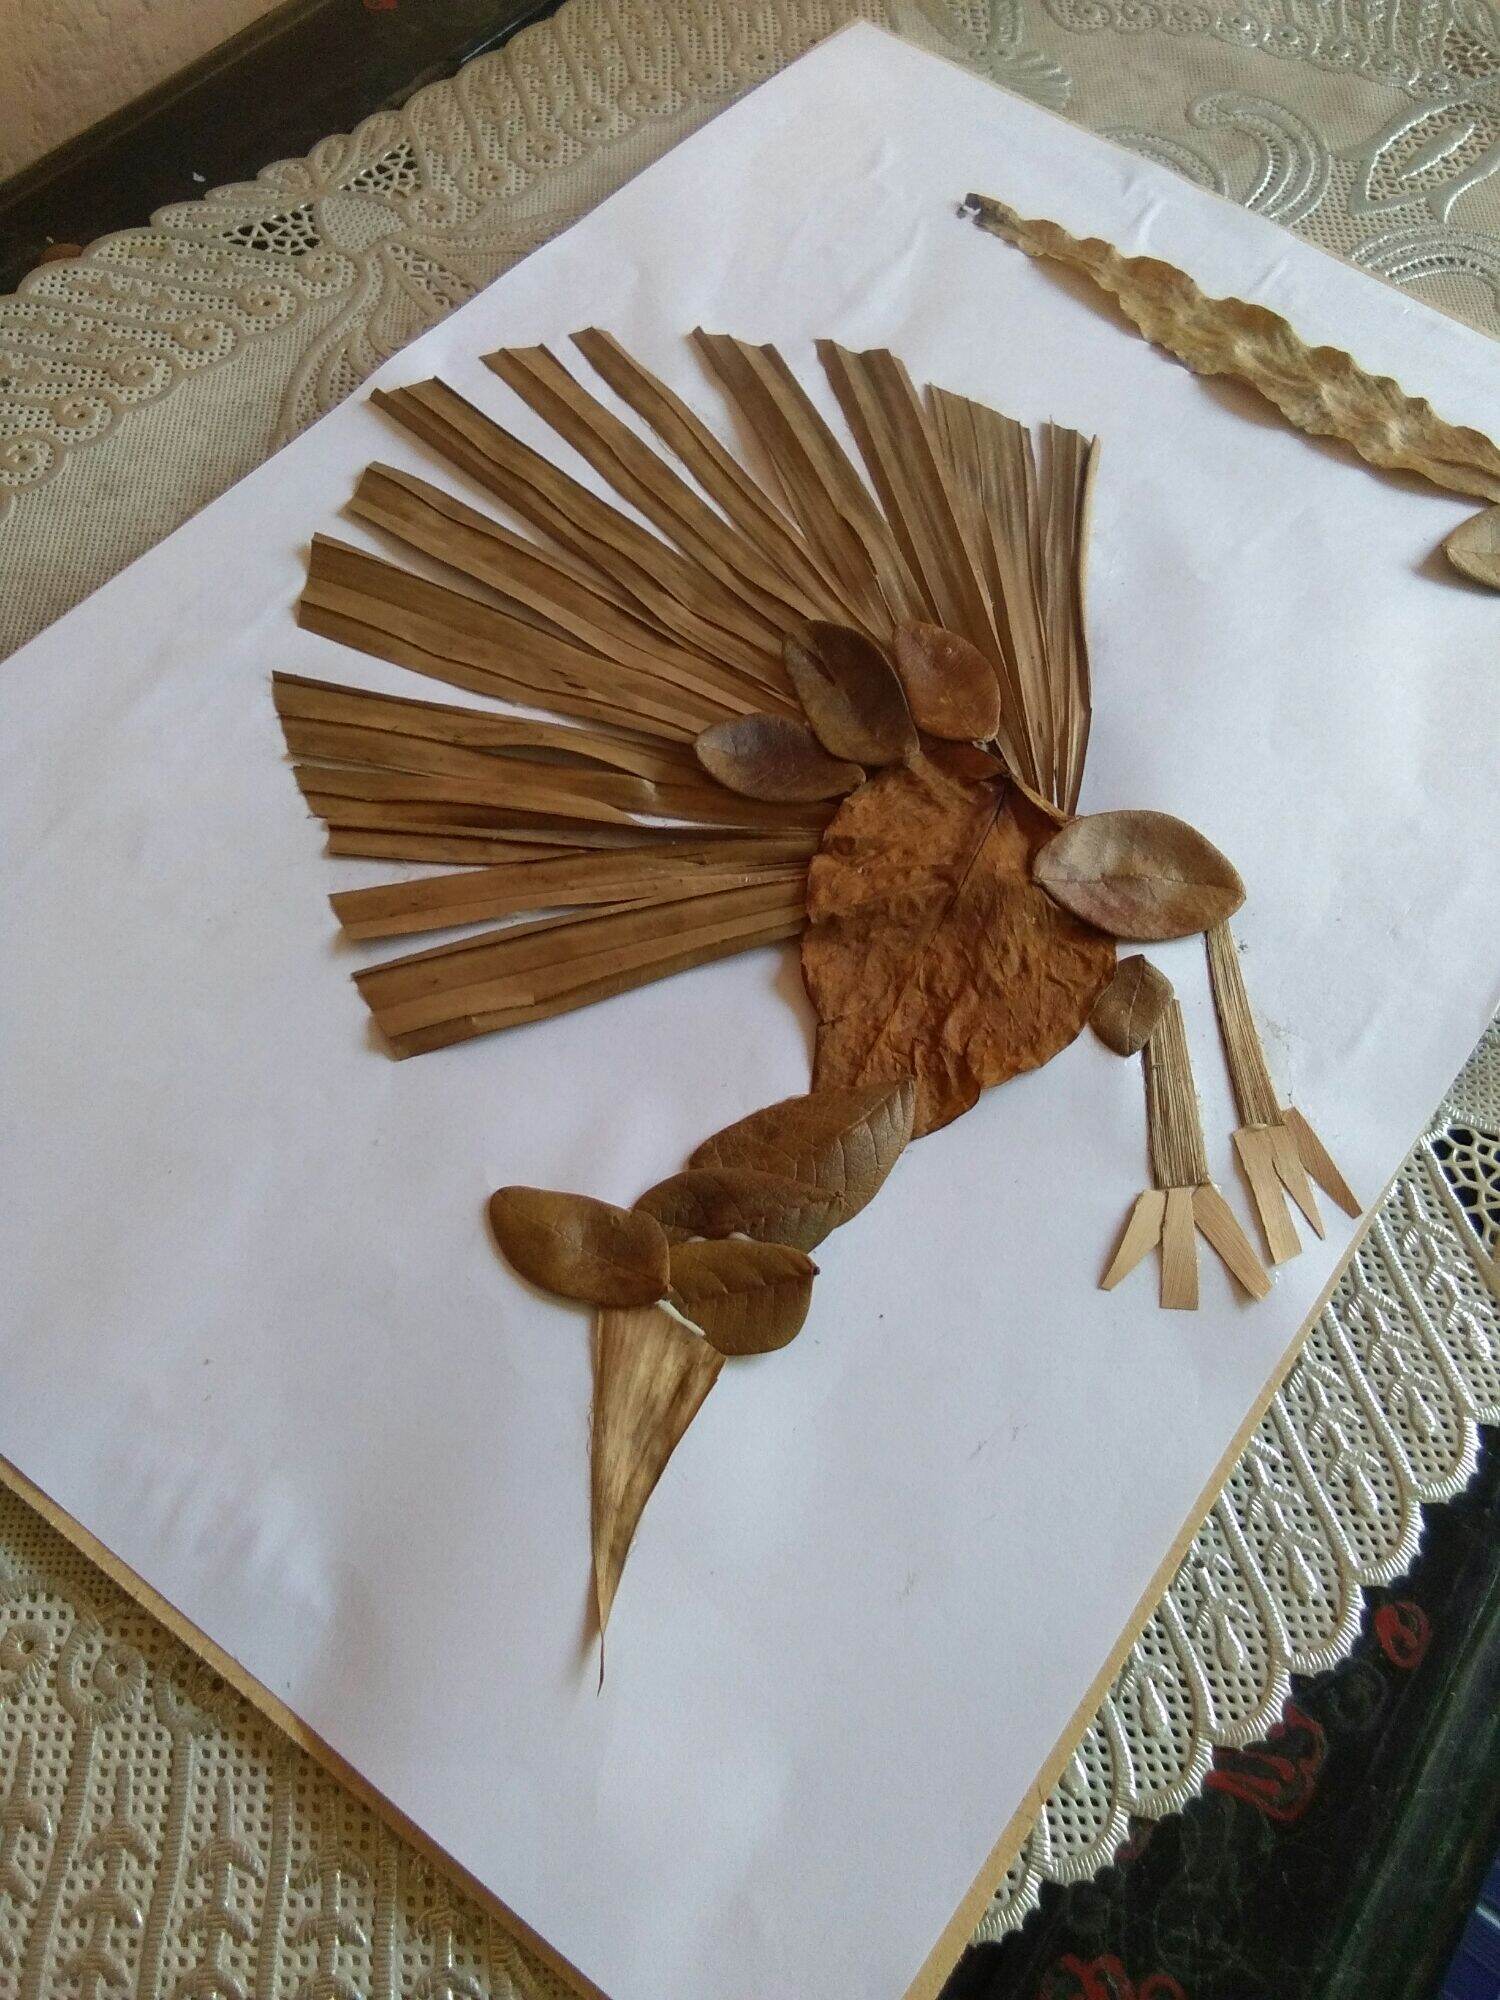 kolase daun kering model burung merak | Lazada Indonesia